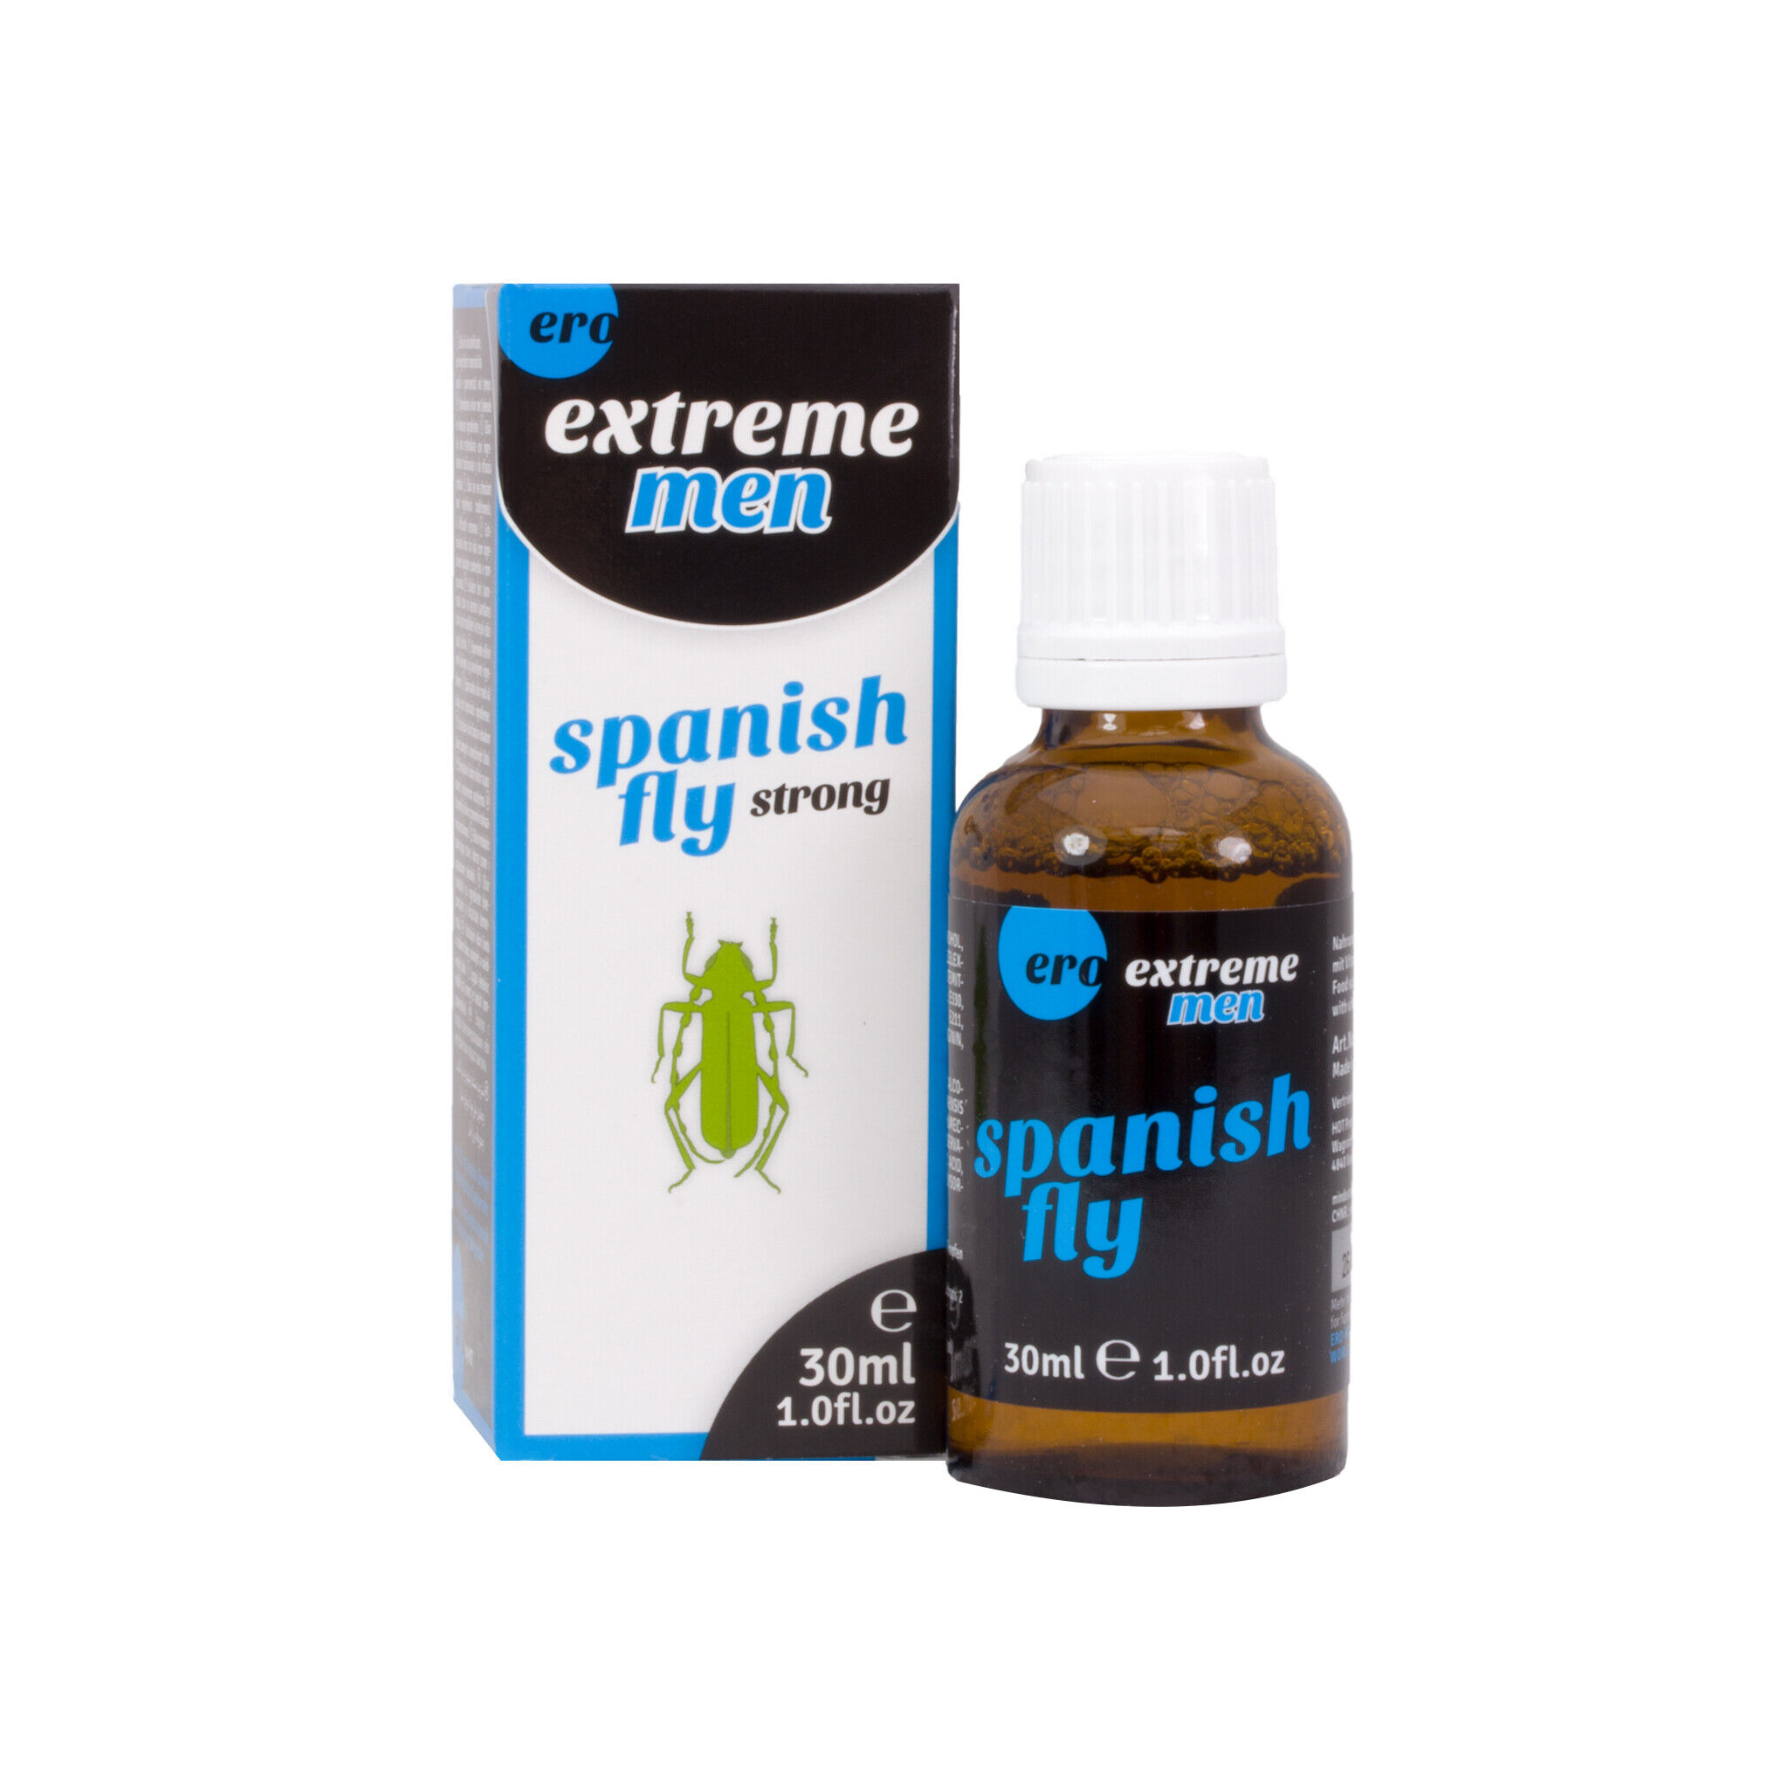 Ejakuliaciją atitolinantys lašiukai “ERO Extreme Men Spanish Fly strong” - 30 ml